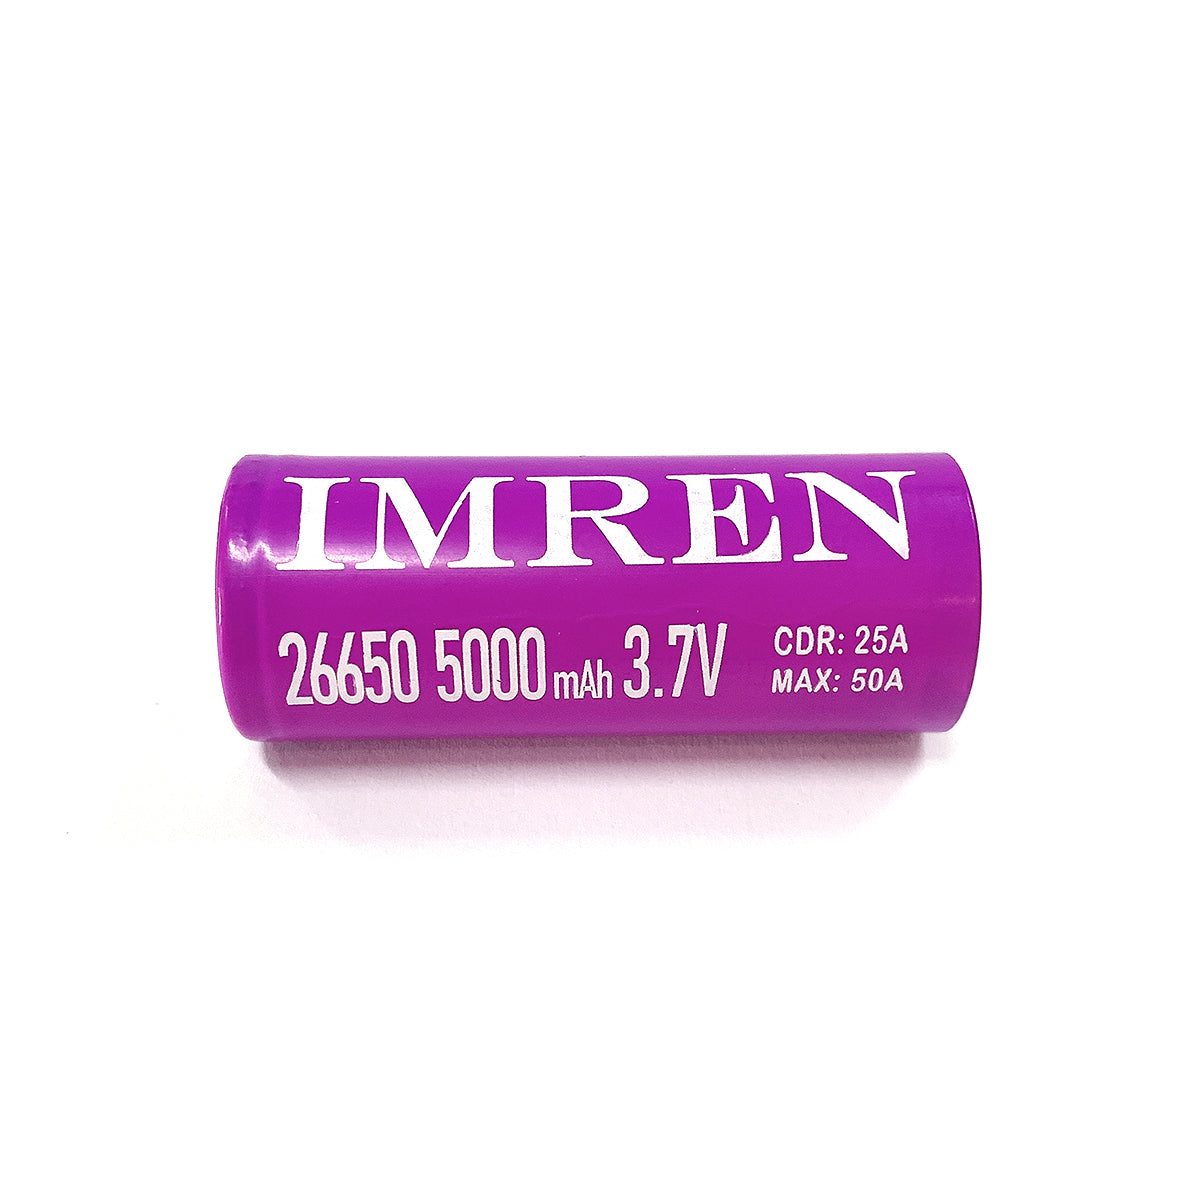 Imren 26650 5000 mAh Purple 2 Pack